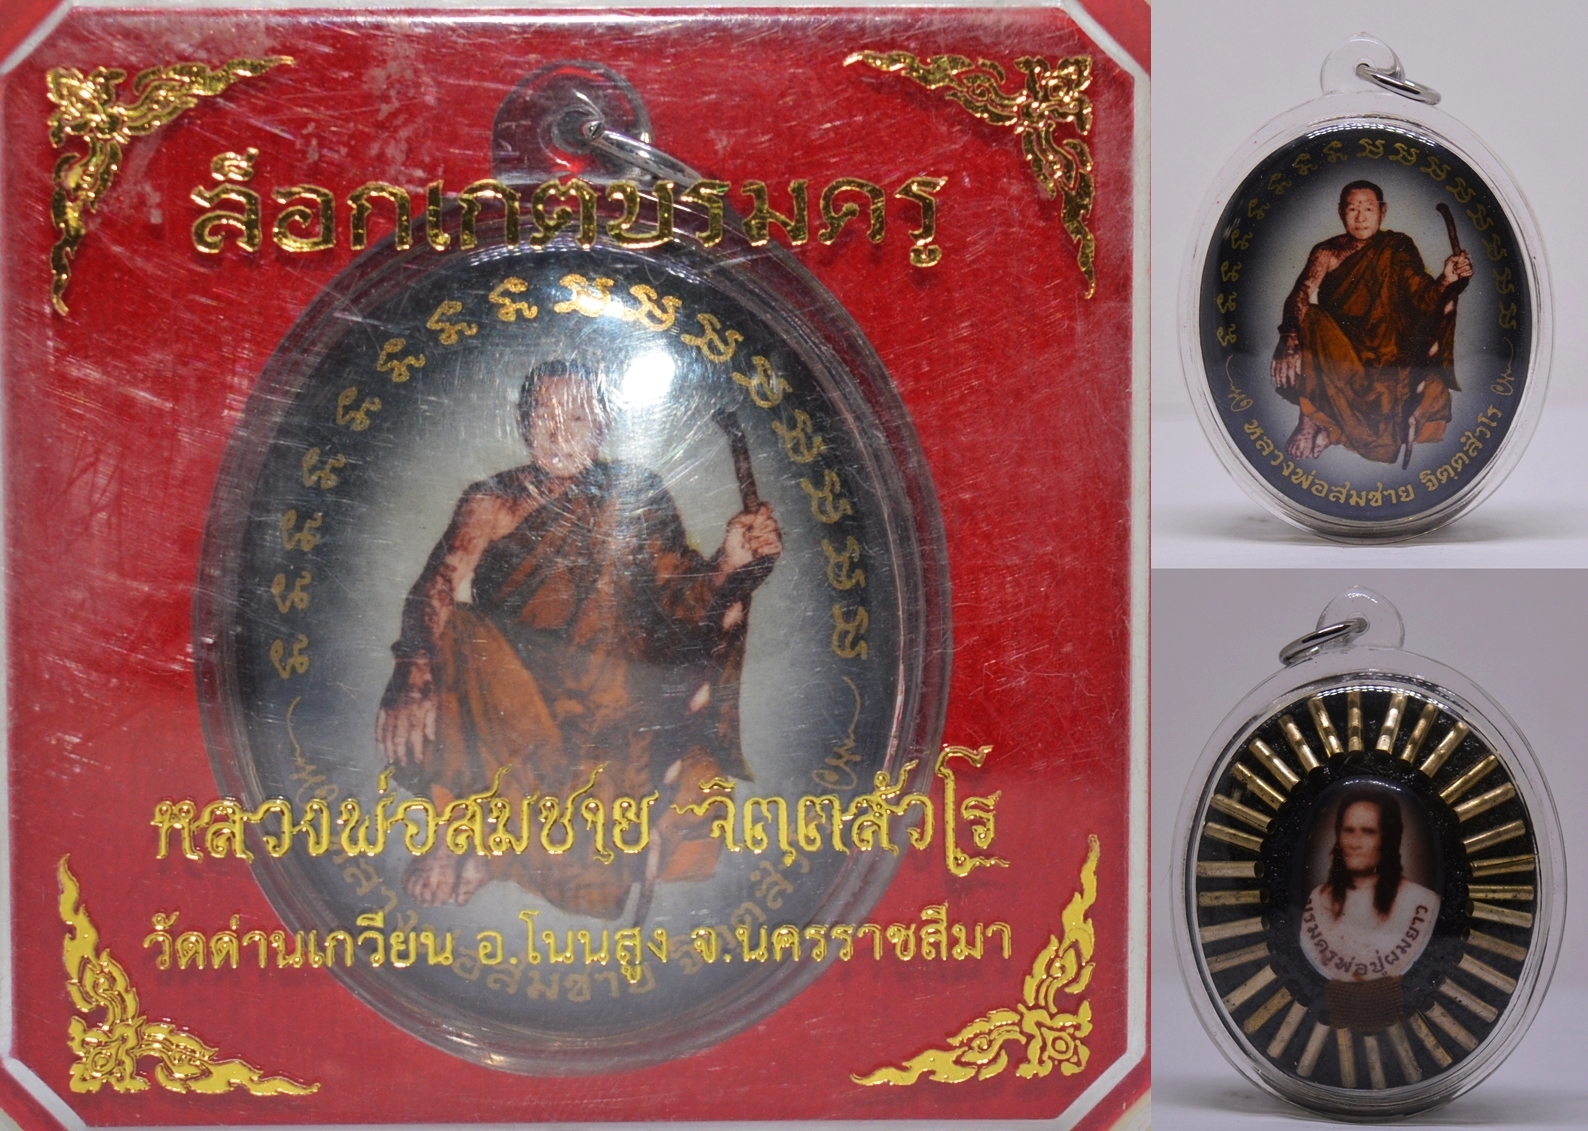 ล็อกเก็ตบรมครู ฉากซีเปีย ฝังตะกรุดเงิน หลวงพ่อสมชาย วัดด่านเกวียน นครราชสีมา 2555